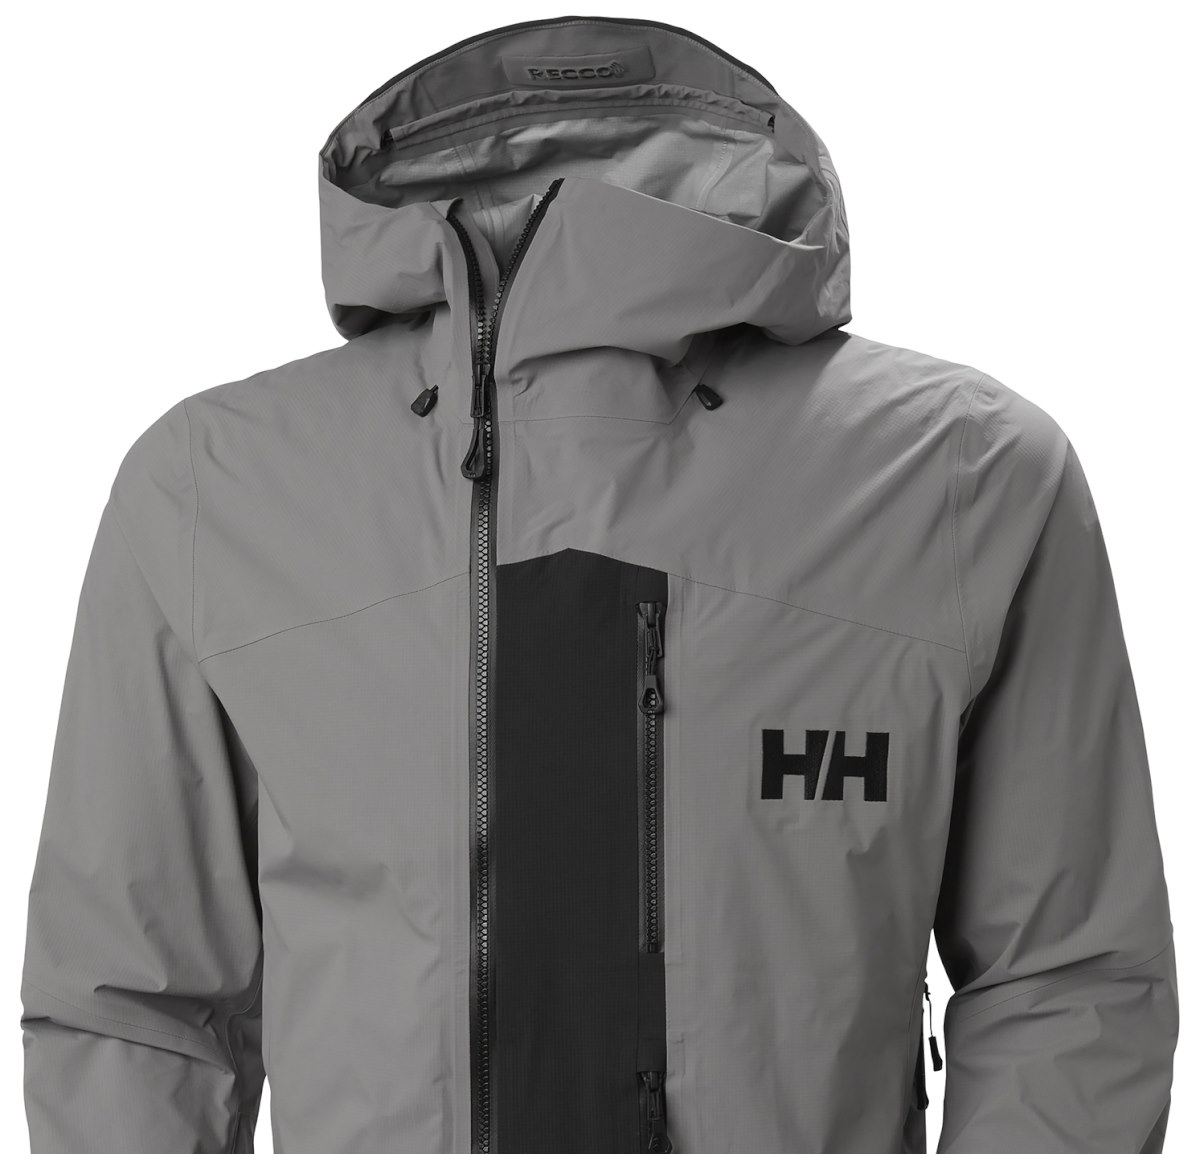 Odin BC Infinity Shell Jacket de HH. La aliada perfecta para el esquí de travesía